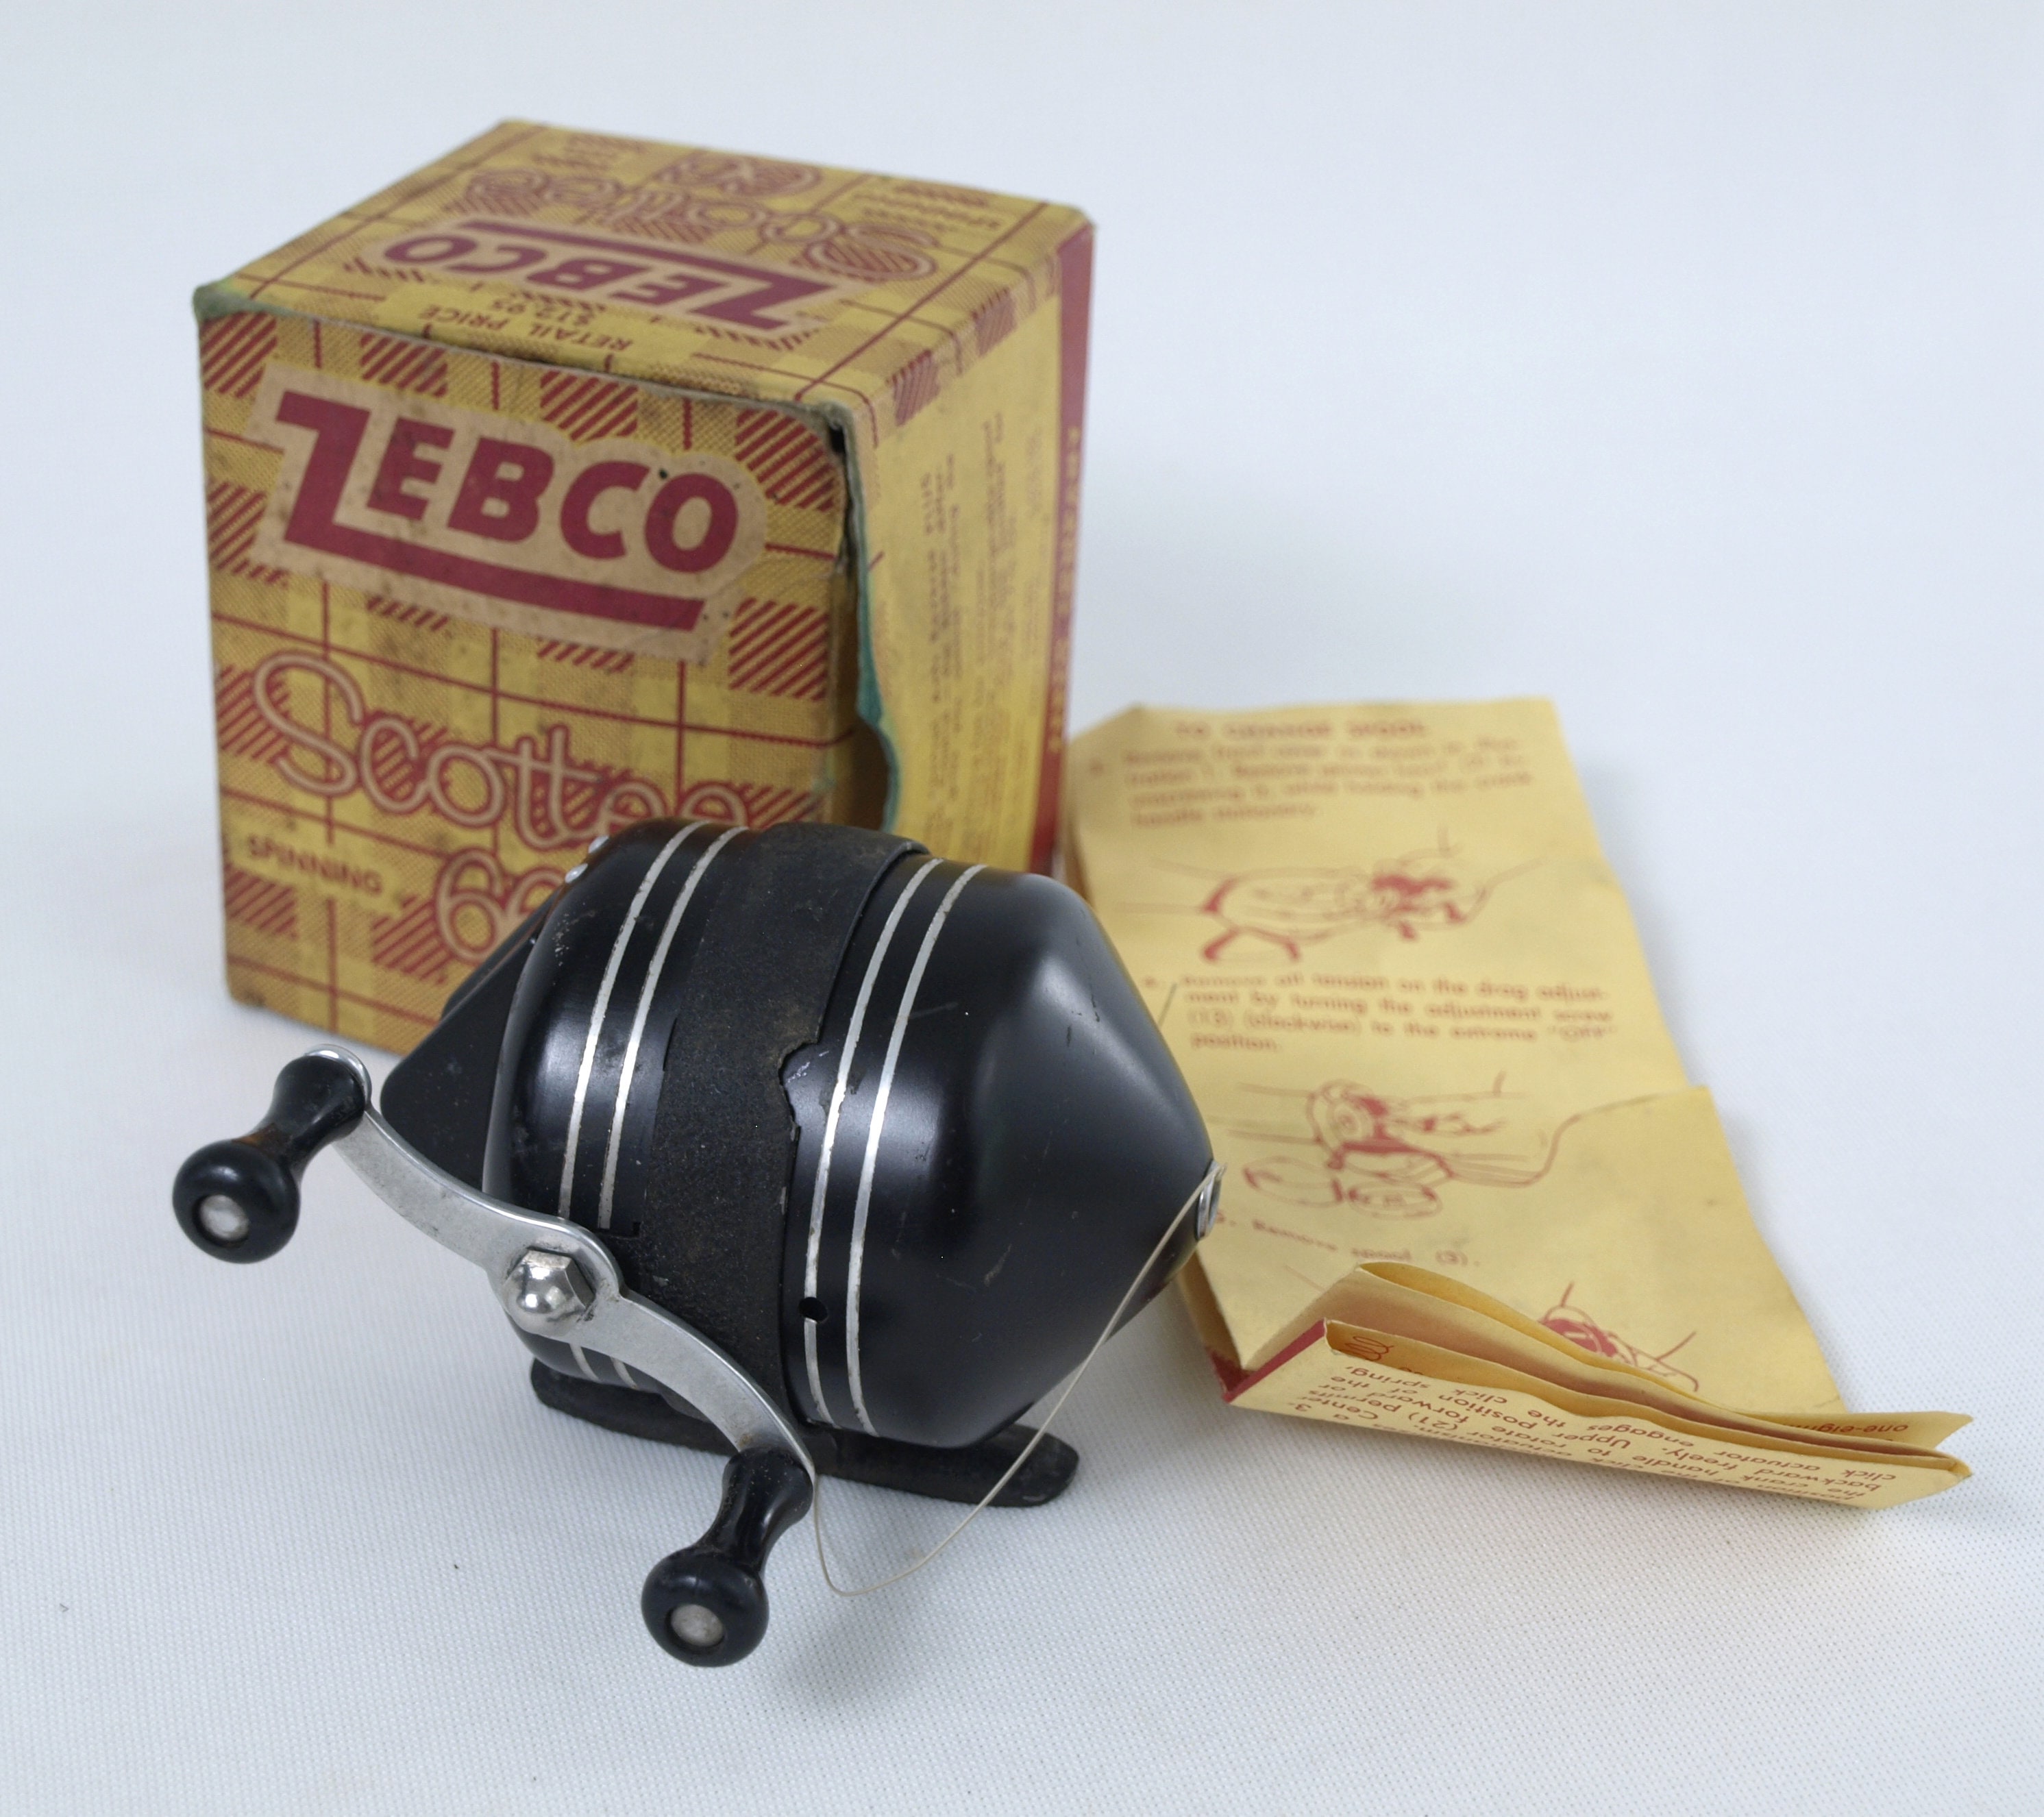 Vintage Zebco 66 FOR SALE! PicClick, 42% OFF